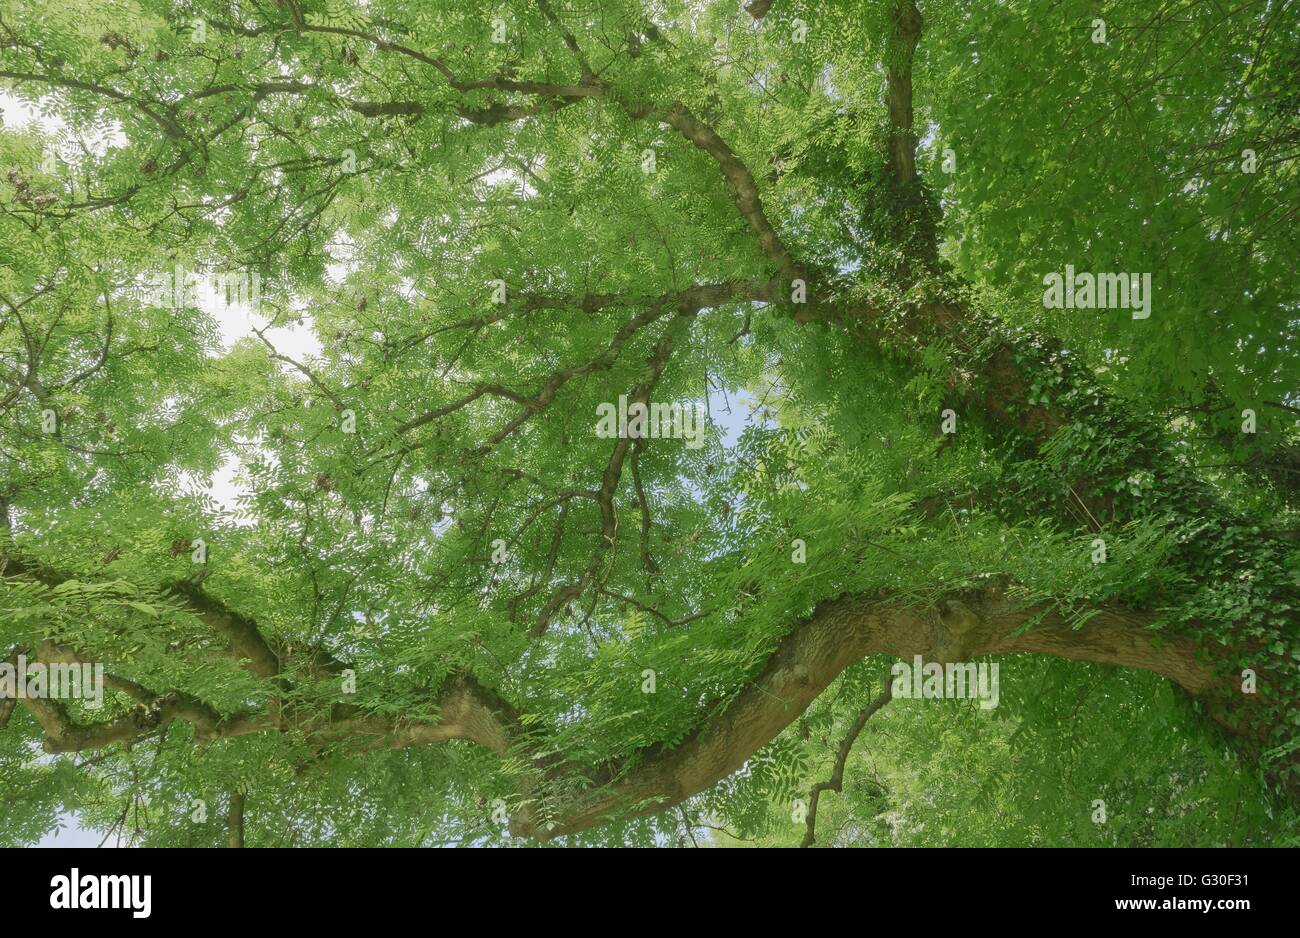 La cubierta forestal por el verde de las hojas se destacan el slihouette de las ramas y troncos Foto de stock